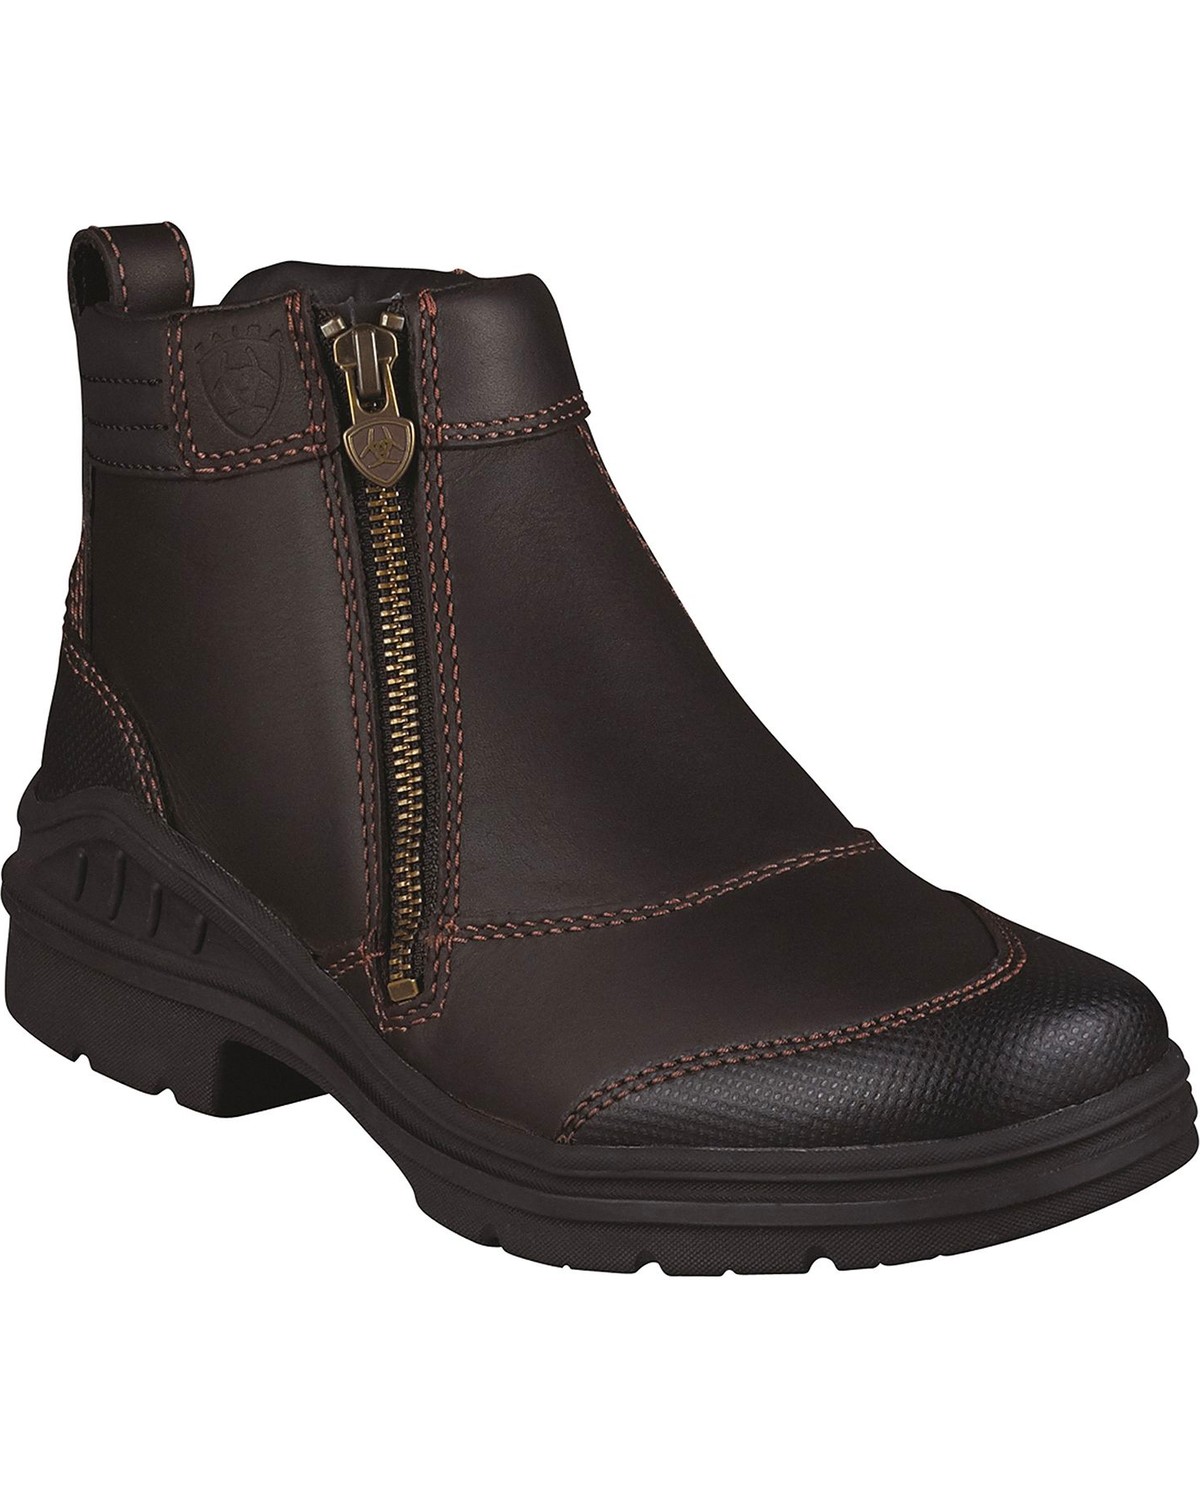 Buy > farmer chelsea boots > in stock